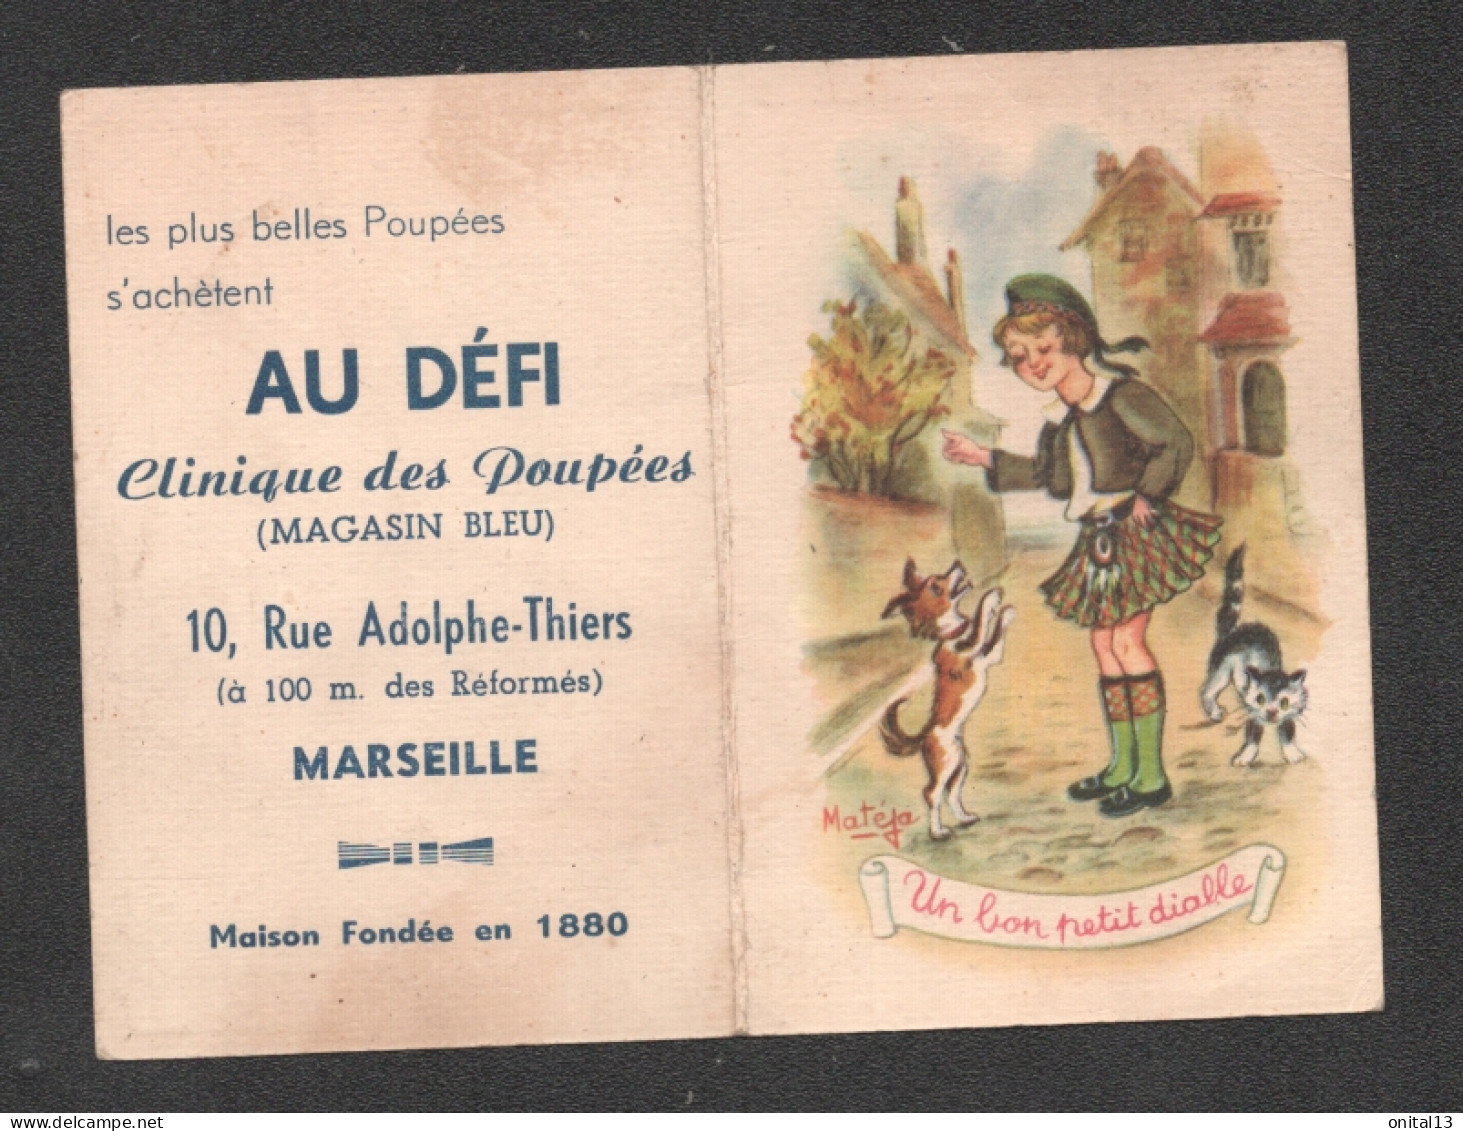 Calendrier 1956 / Pub CLINIQUE DES POUPEES / AU DEFI   MARSEILLE / ILLUSTRATION MATEJA / UN BON PETIT DIABLE   D3332 - Grand Format : 1941-60